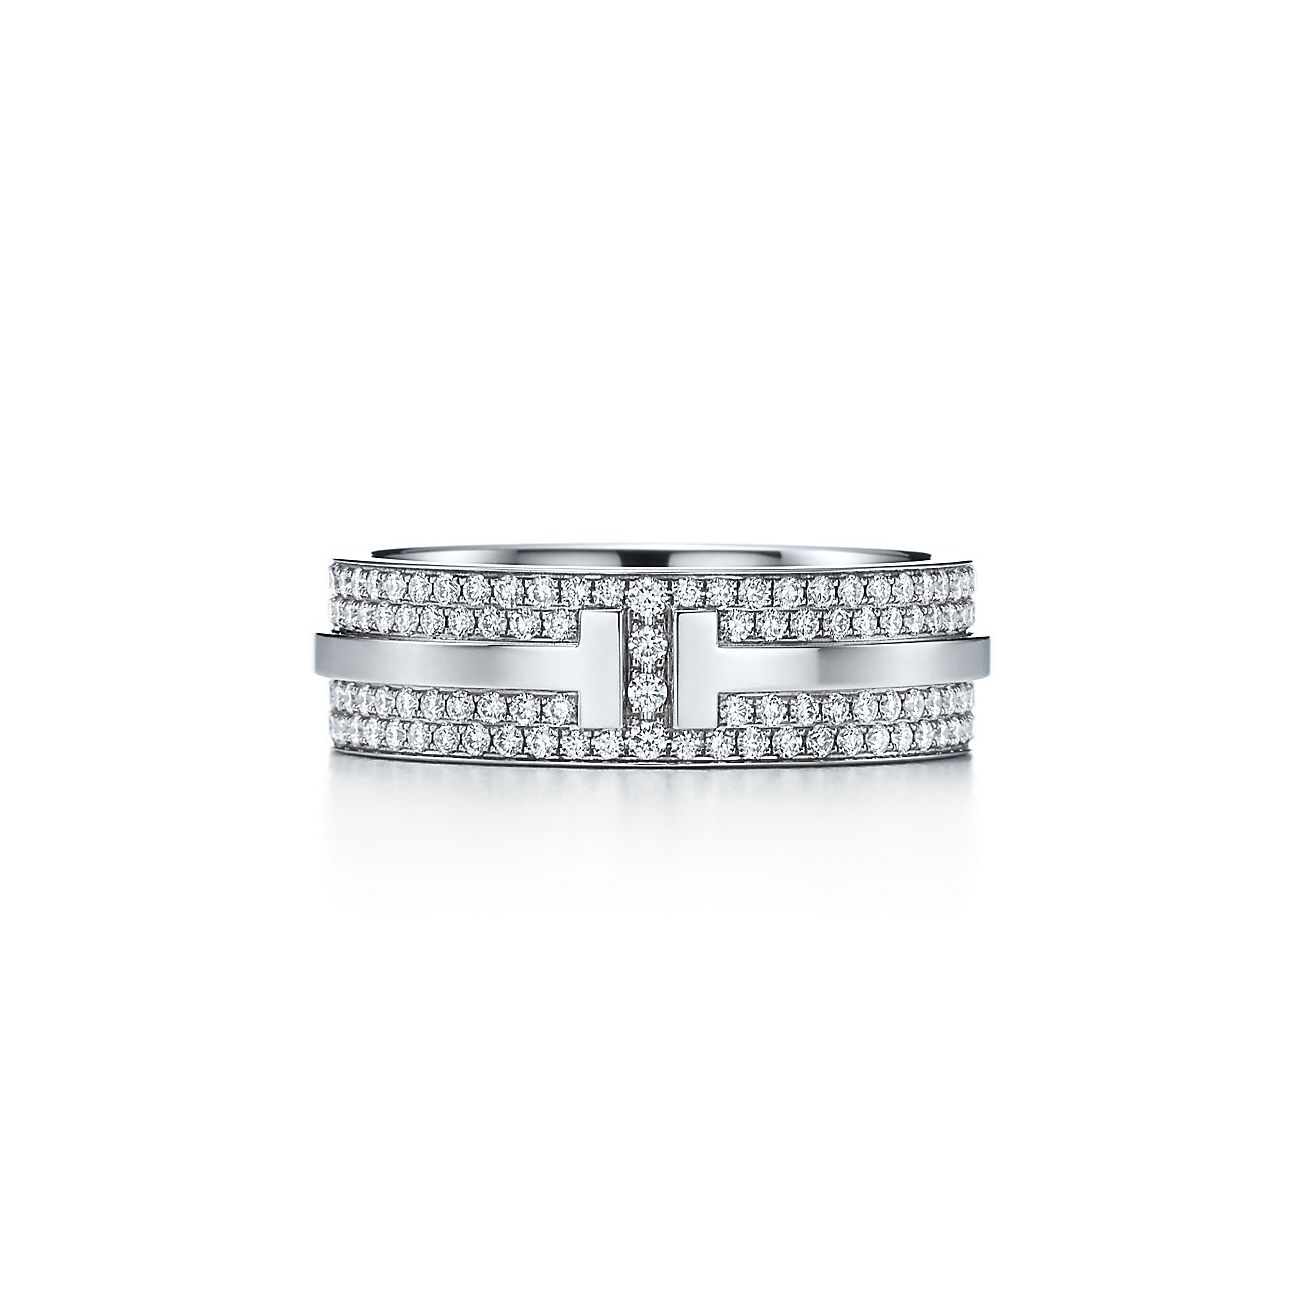 ティファニー T ワイド パヴェ ダイヤモンド リング 18K ホワイトゴールド 幅 5.8MM | Tiffany & Co.